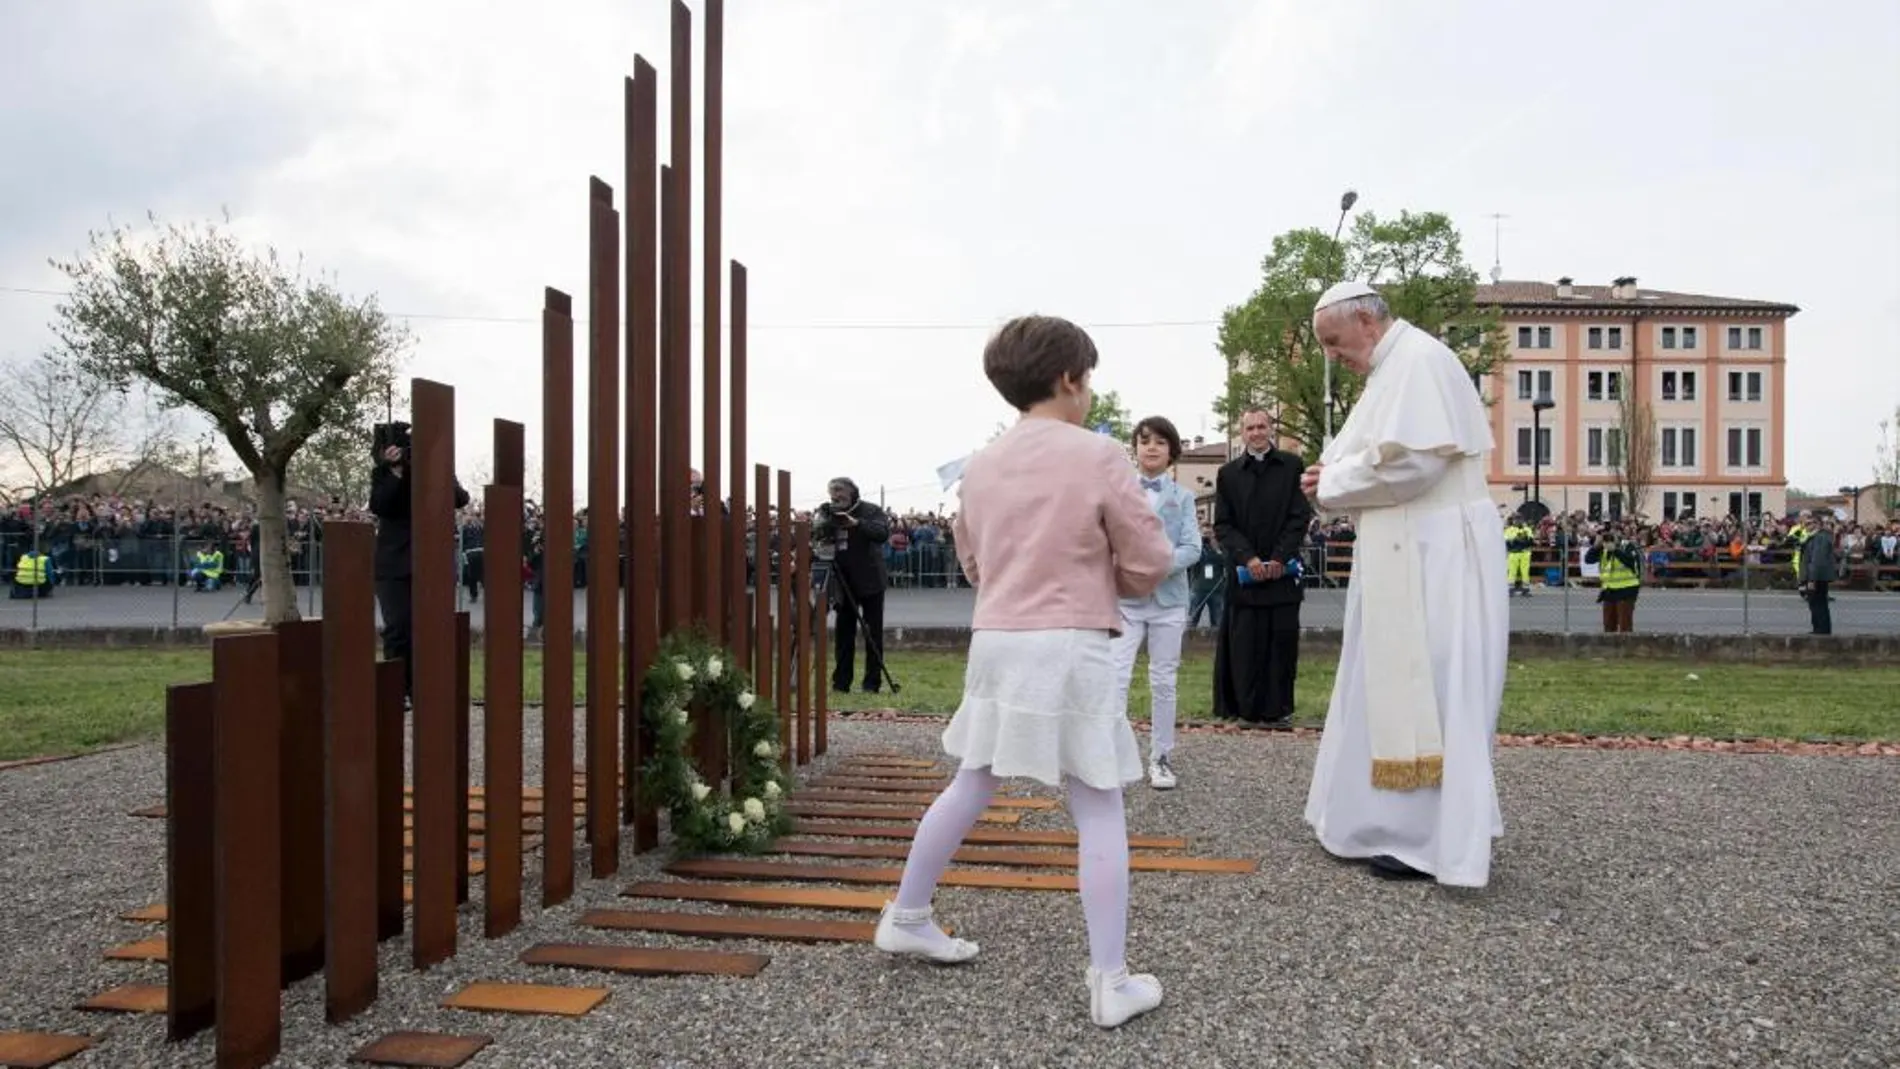 El Papa Francisco rinde tributo a las víctimas de los fuertes terremotos de 2012 durante su visita pastoral de un día a las ciudades de Carpi y Mirandola (Emilia-Romaña, norte de Italia)